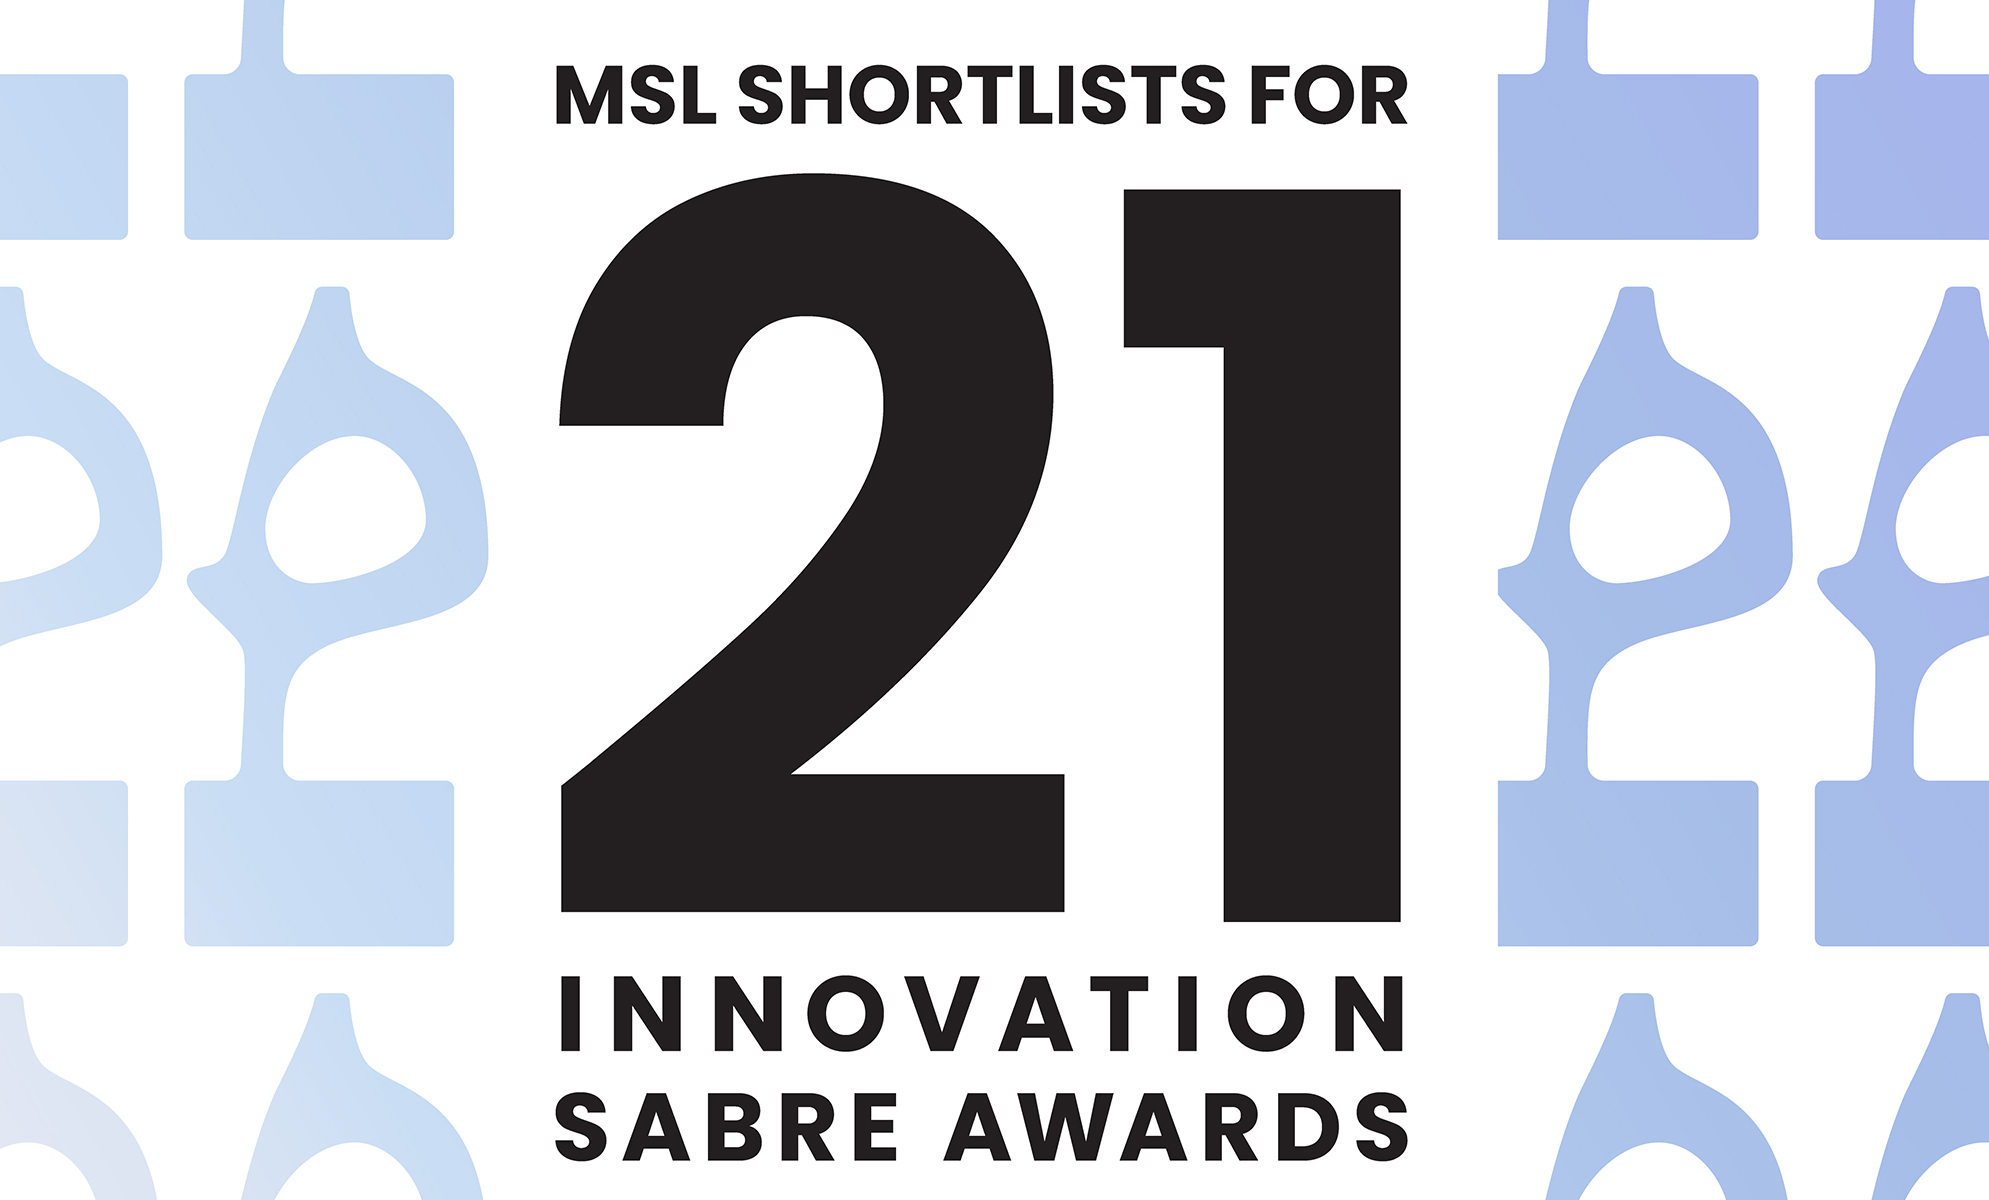 MSL shortlists for 21 Innovation SABRE Awards